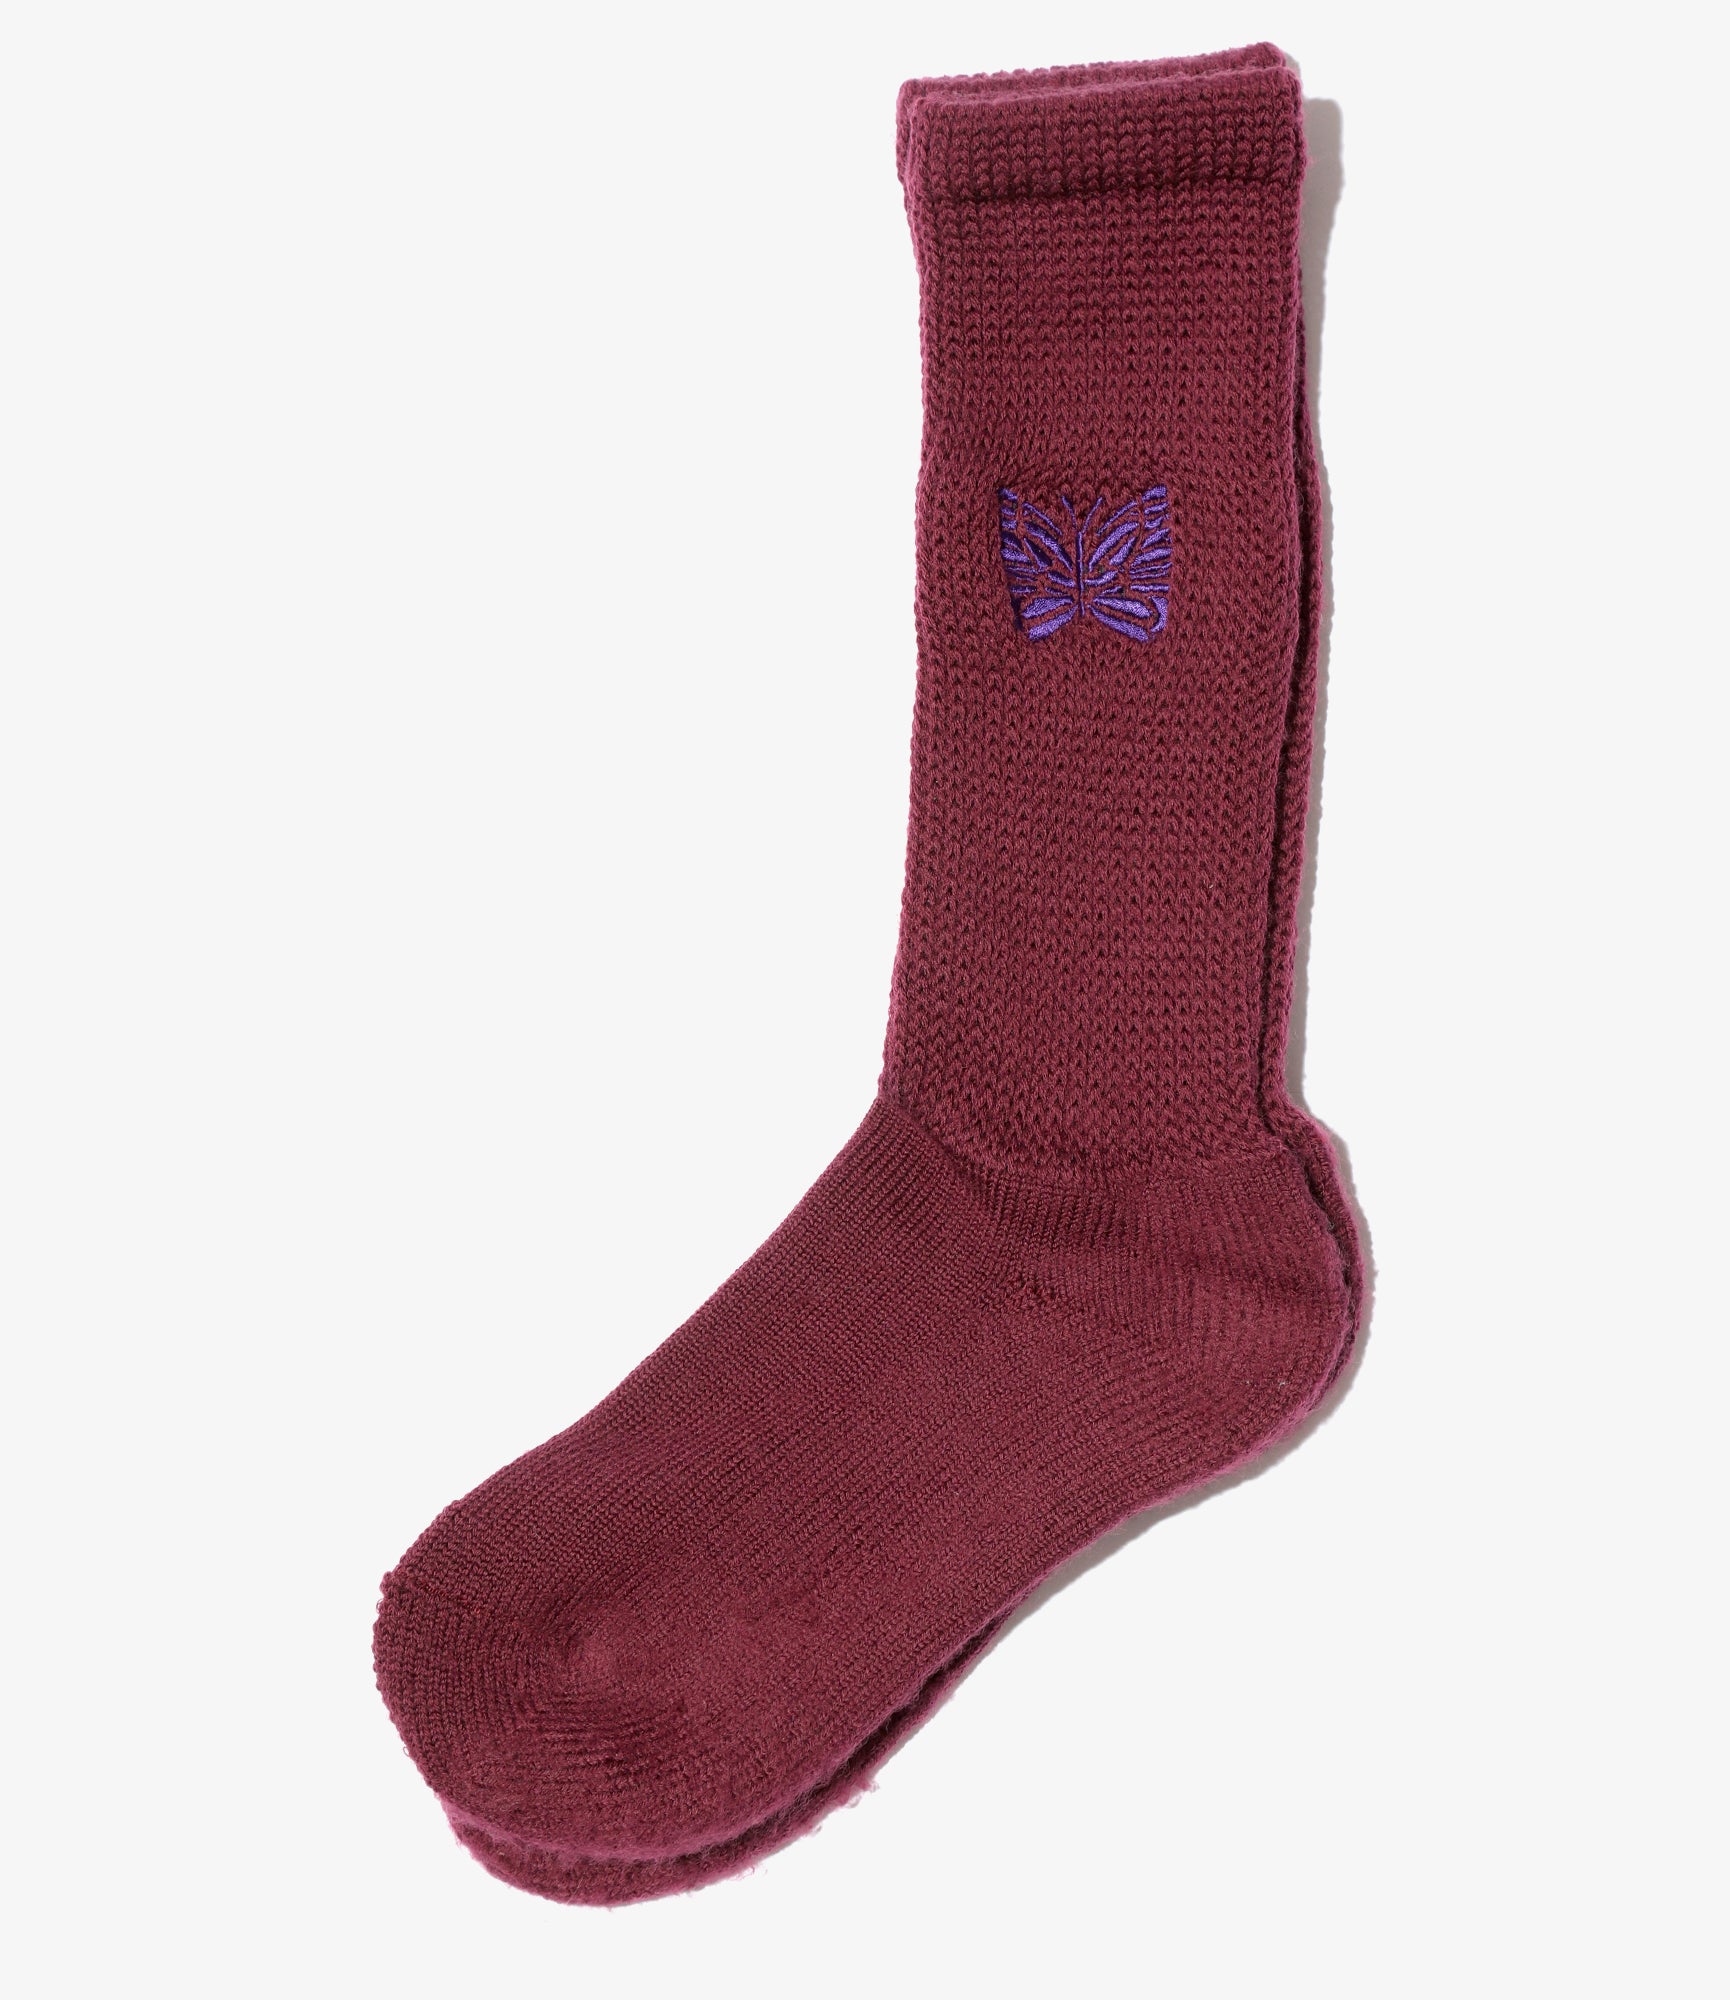 Pile Socks - Wine - Merino Wool